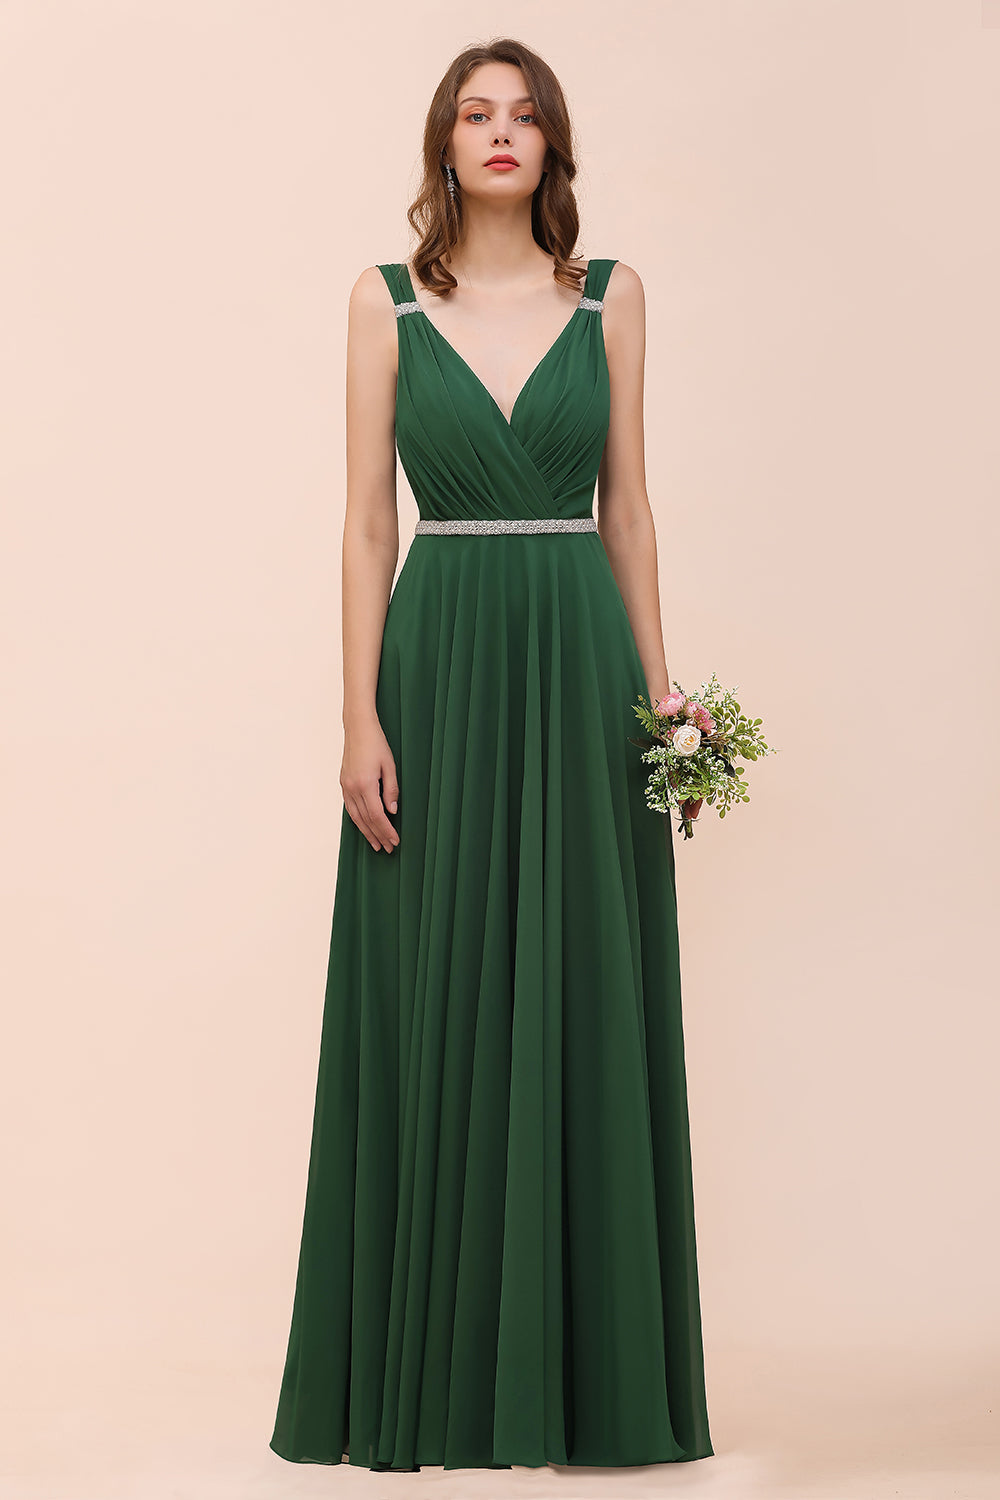 Bestellen sie Brautjungfernkleider Dunkel Grün online bei babyonlinedress.de. Langes Brautjungfernkleid Günstig für Sie maß geschneidert kaufen.